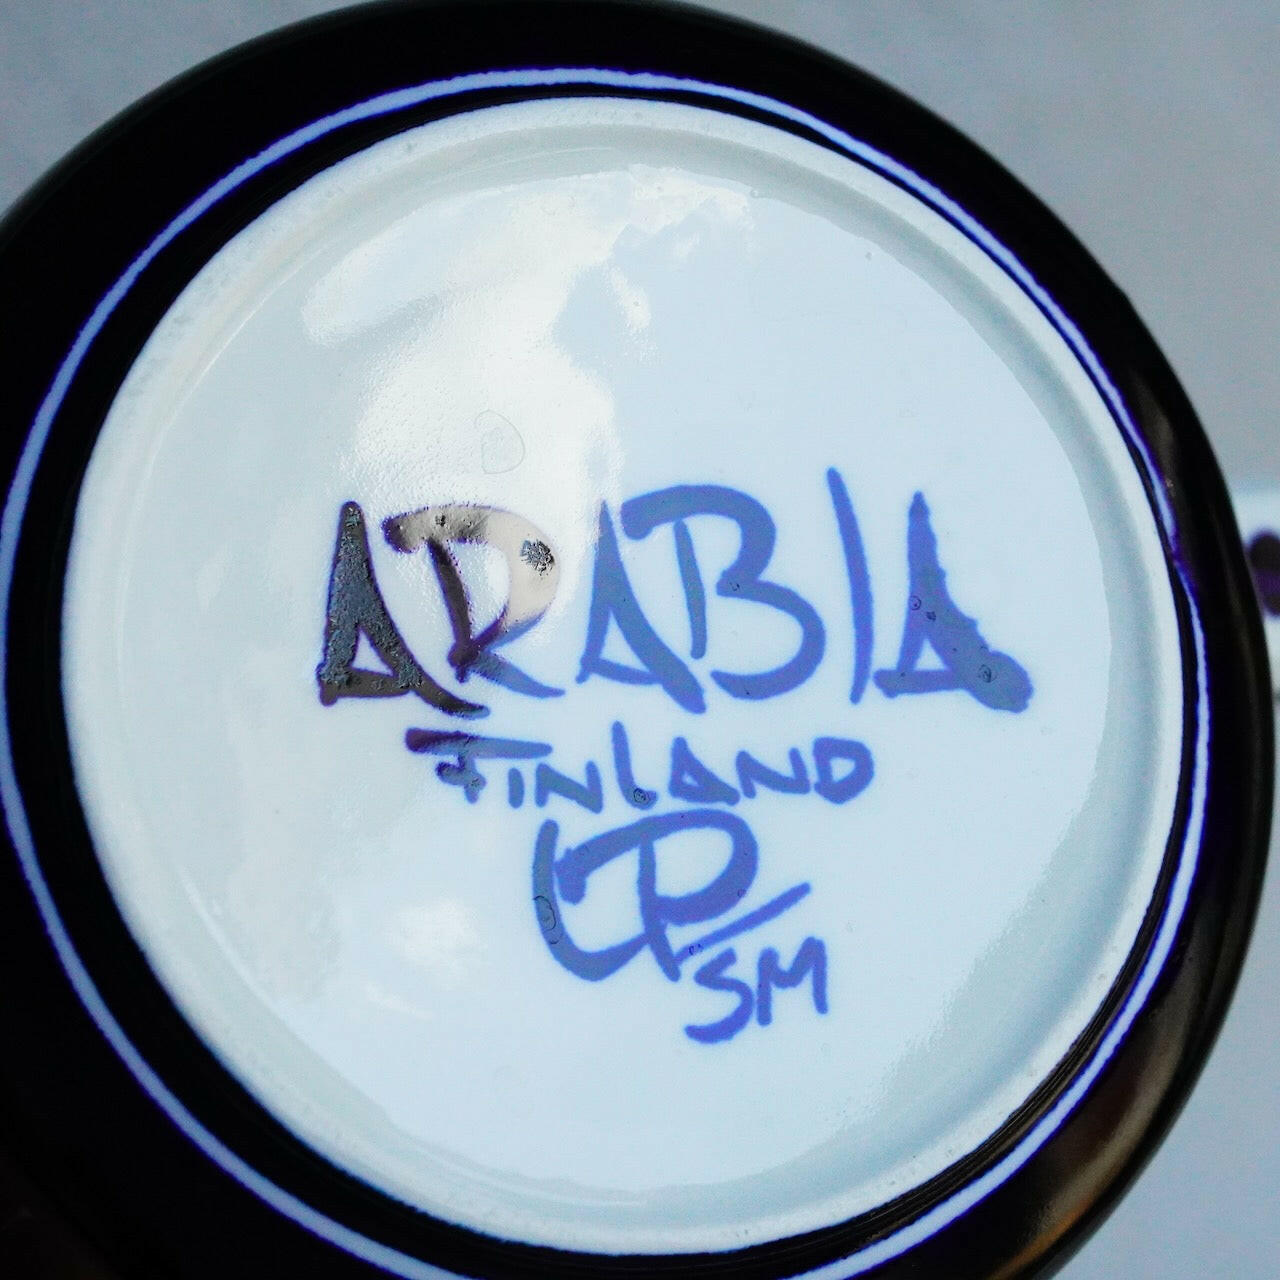 阿拉伯巴伦西亚茶壶